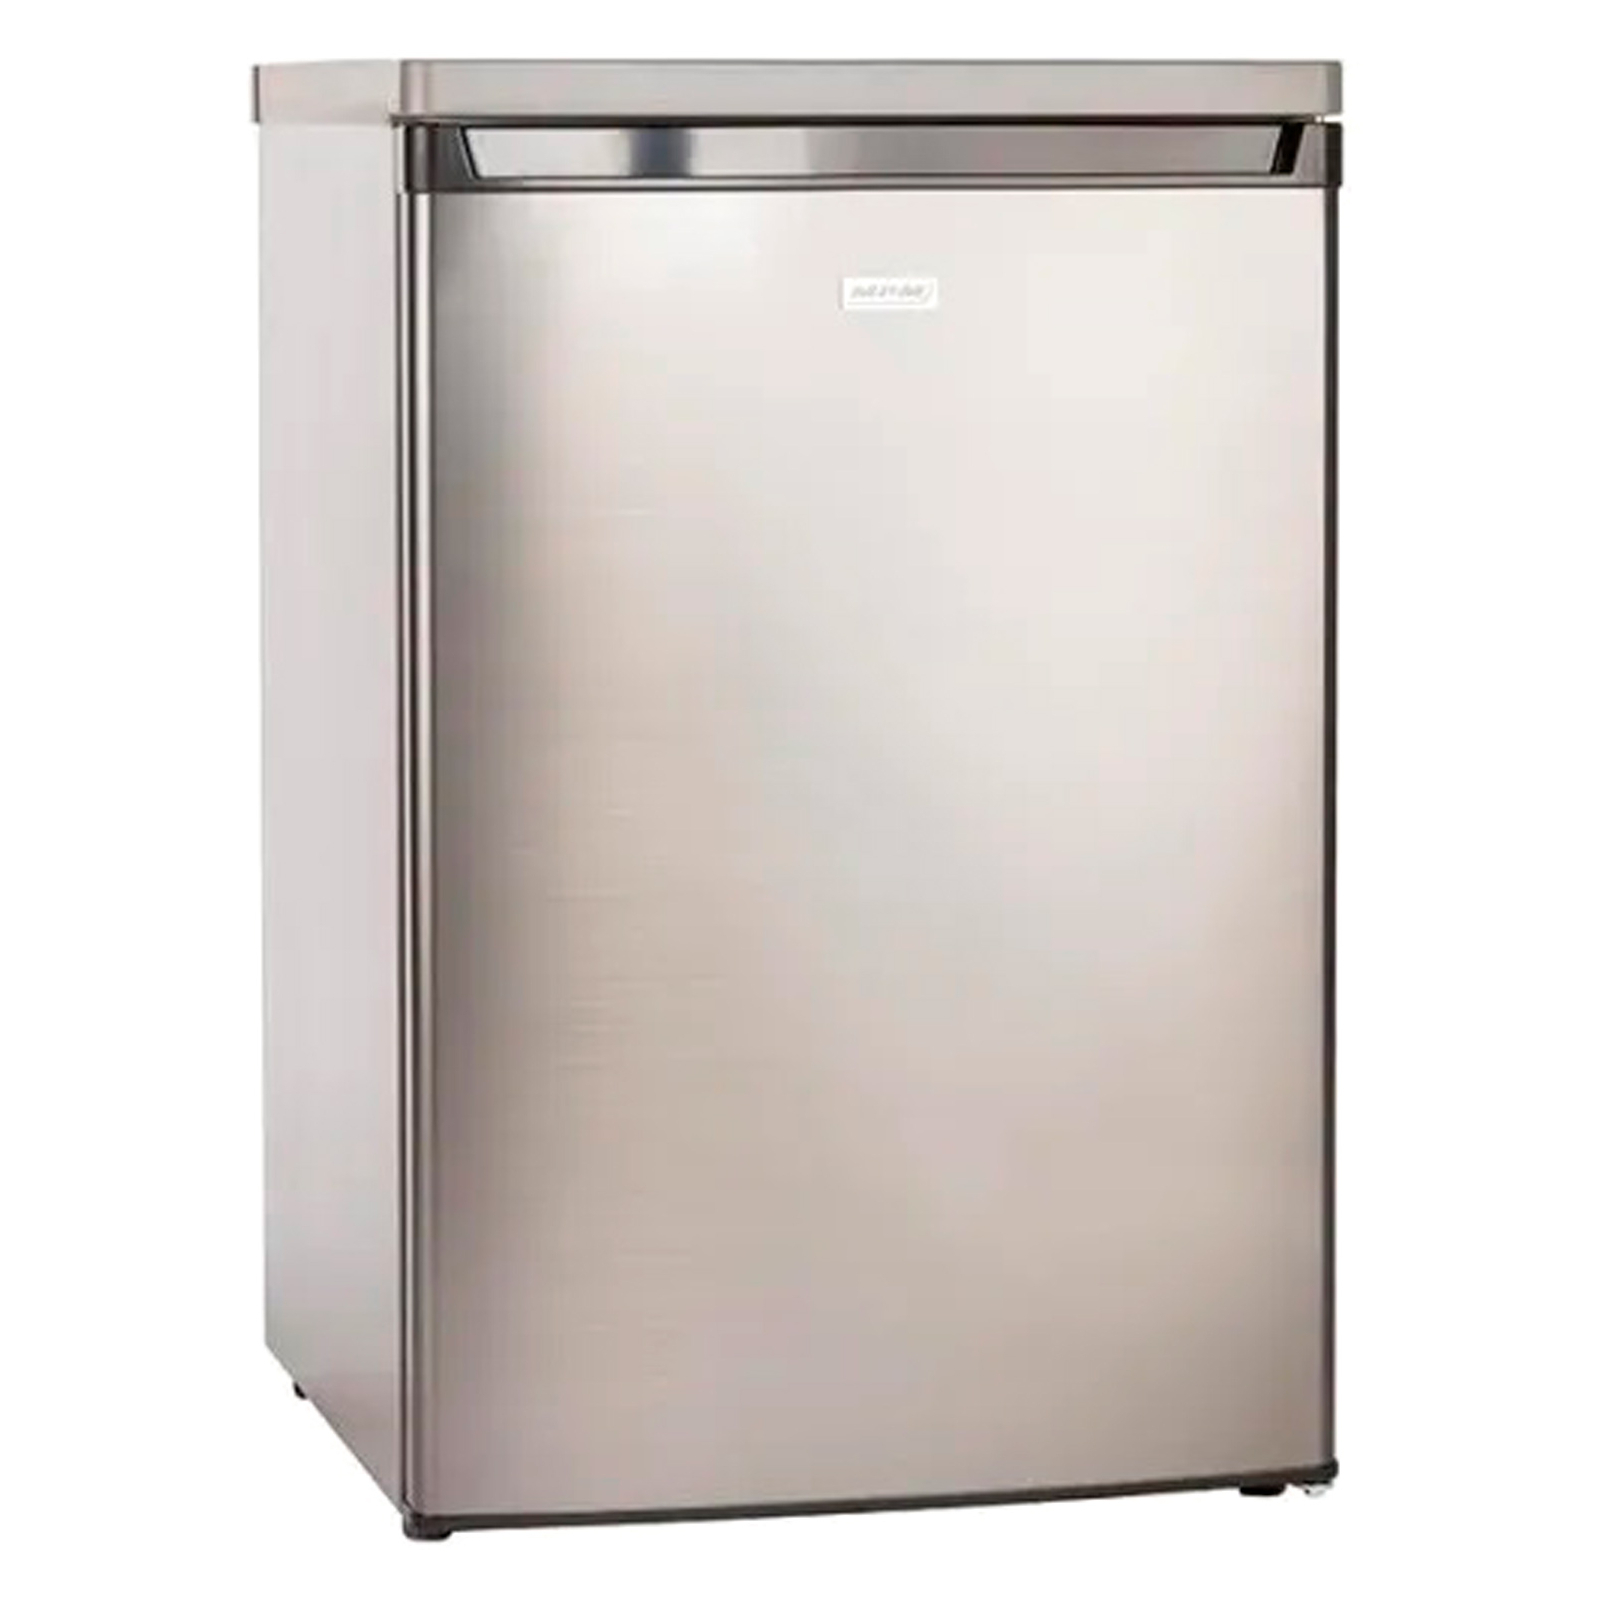 Холодильник MPM MPM-131-CJ-18/AA